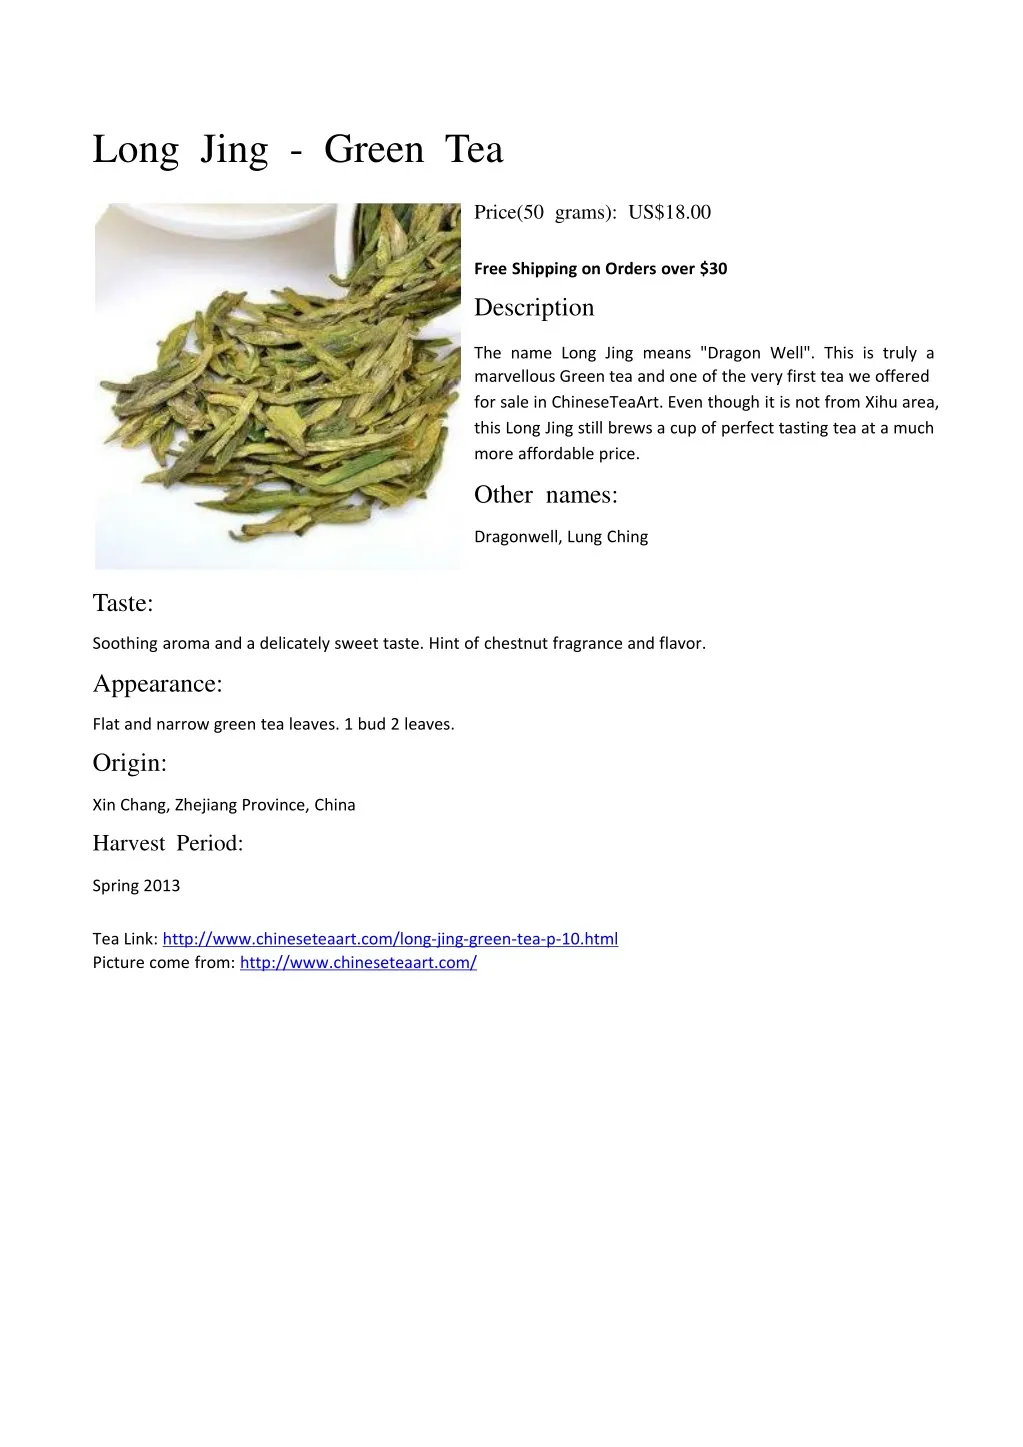 long jing green tea